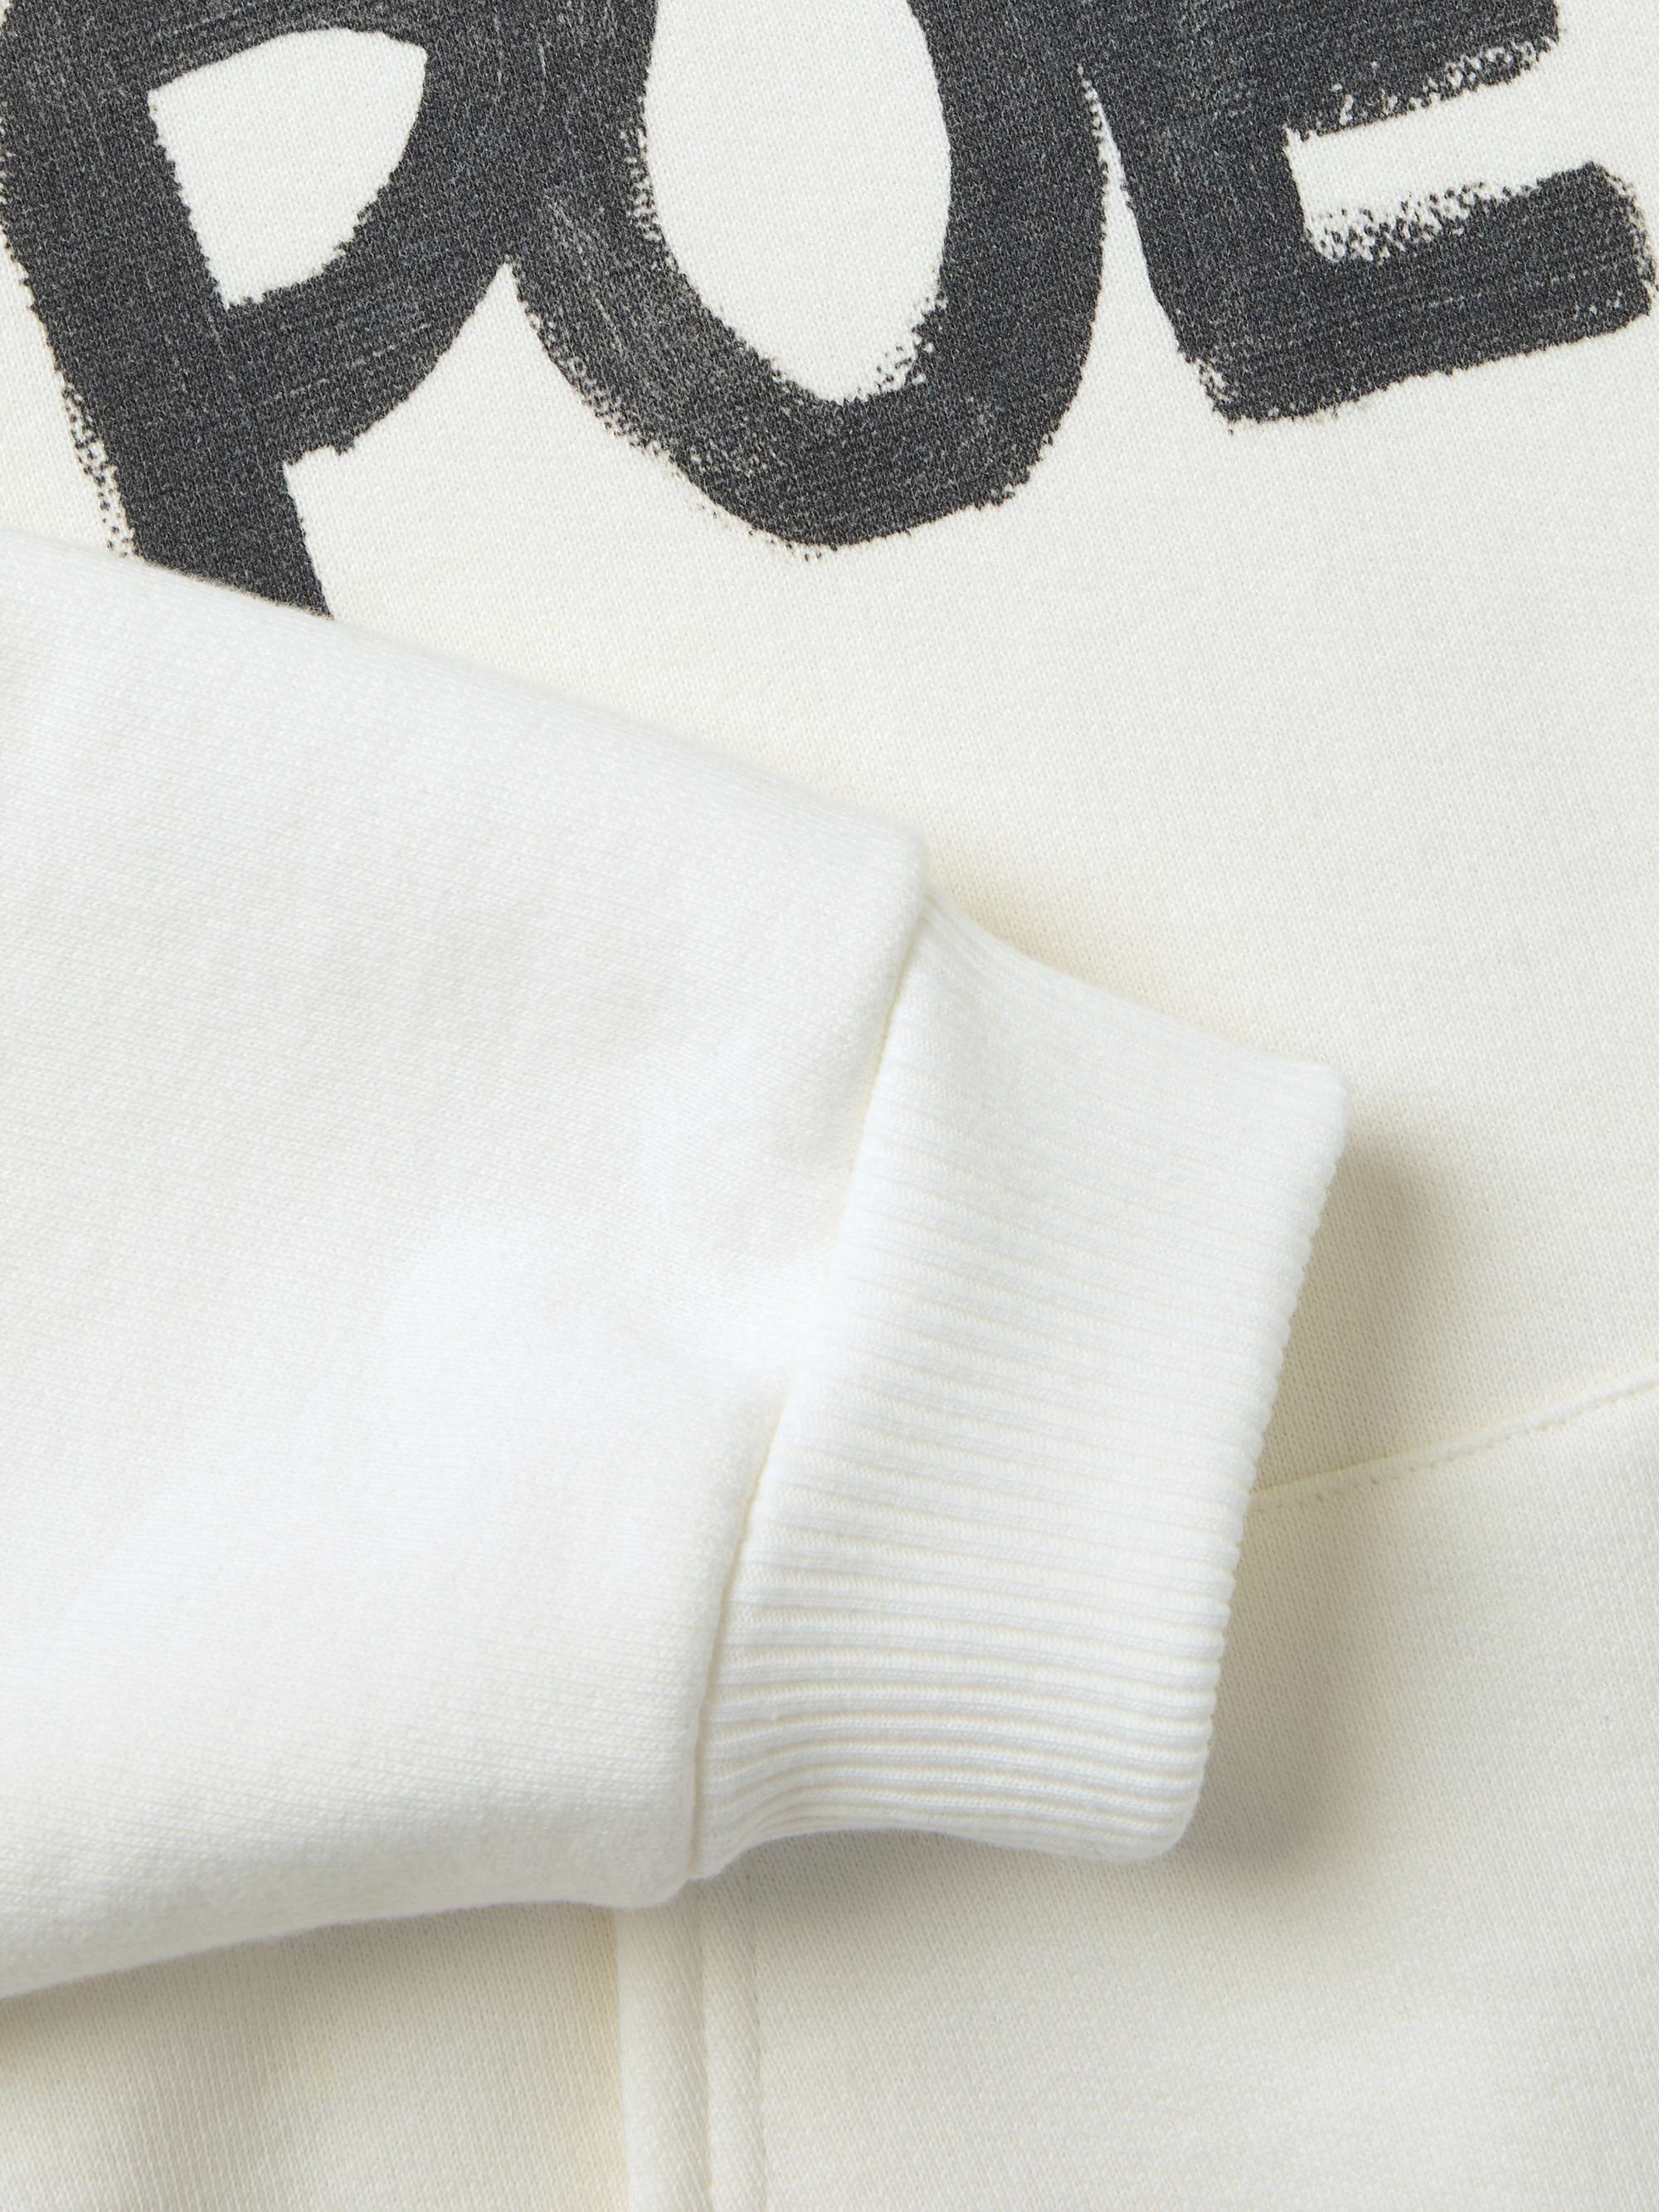 CELINE HOMME Printed Cotton-Jersey Hoodie for Men | MR PORTER